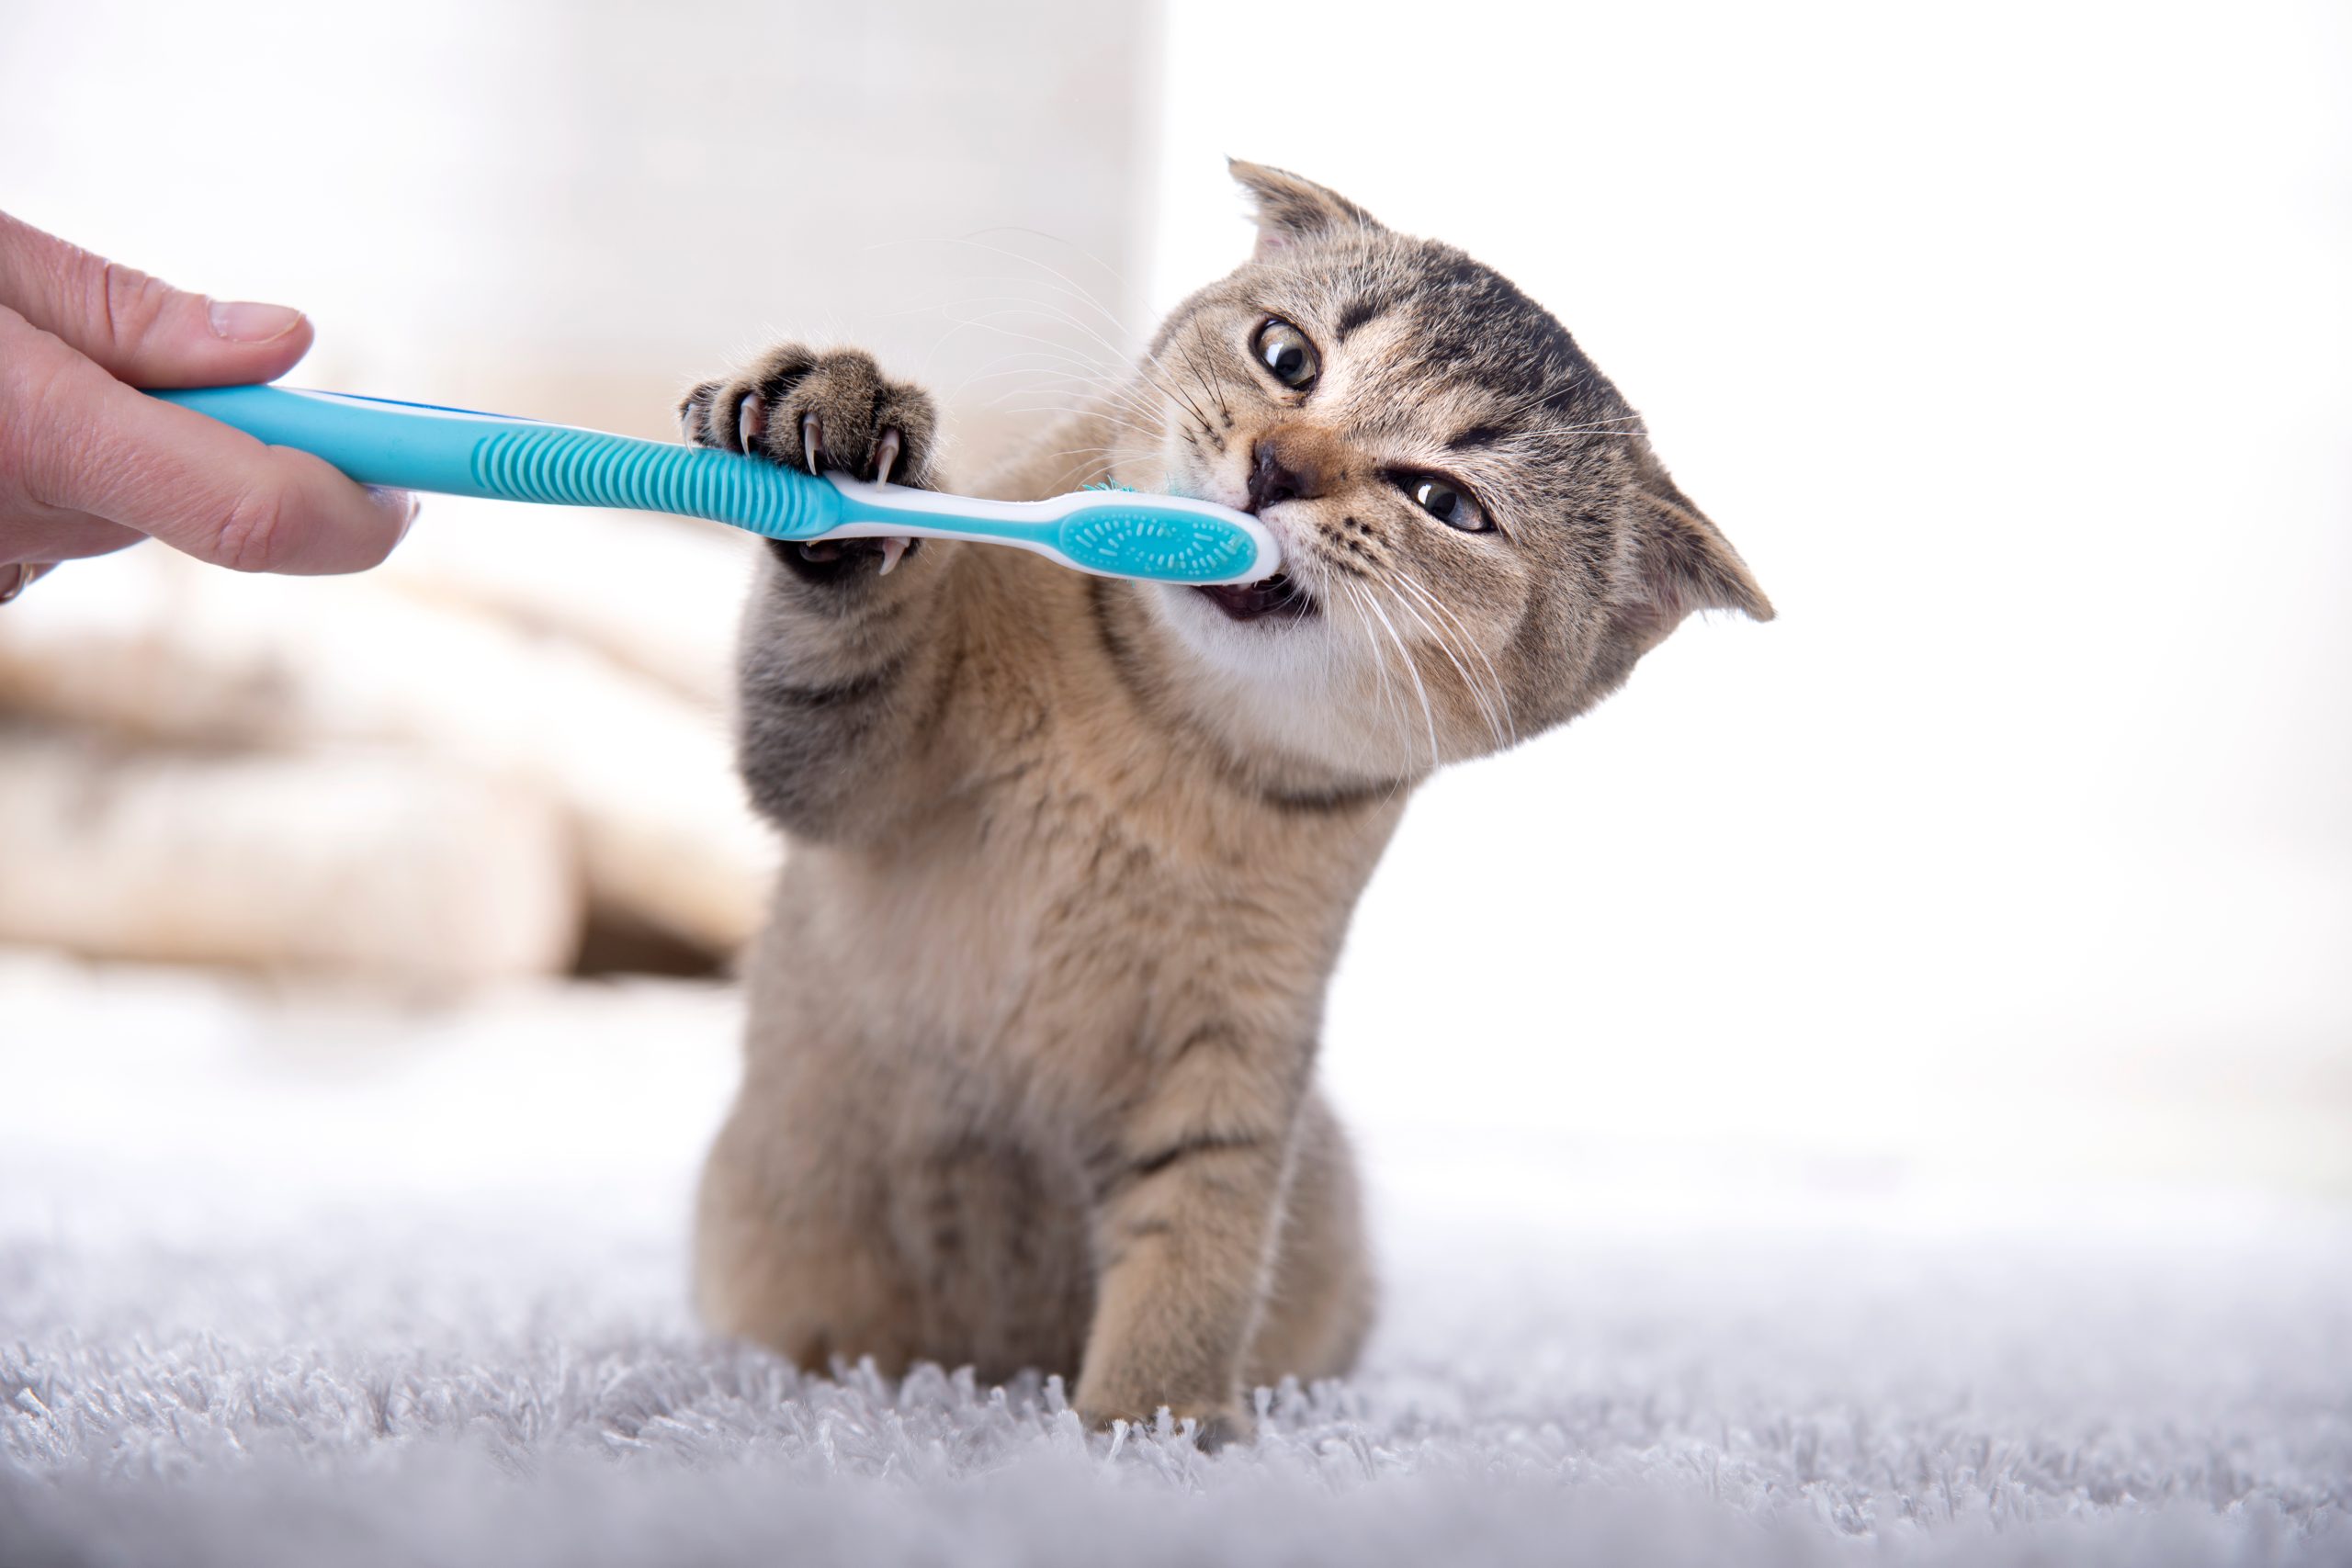 brush cat teeth